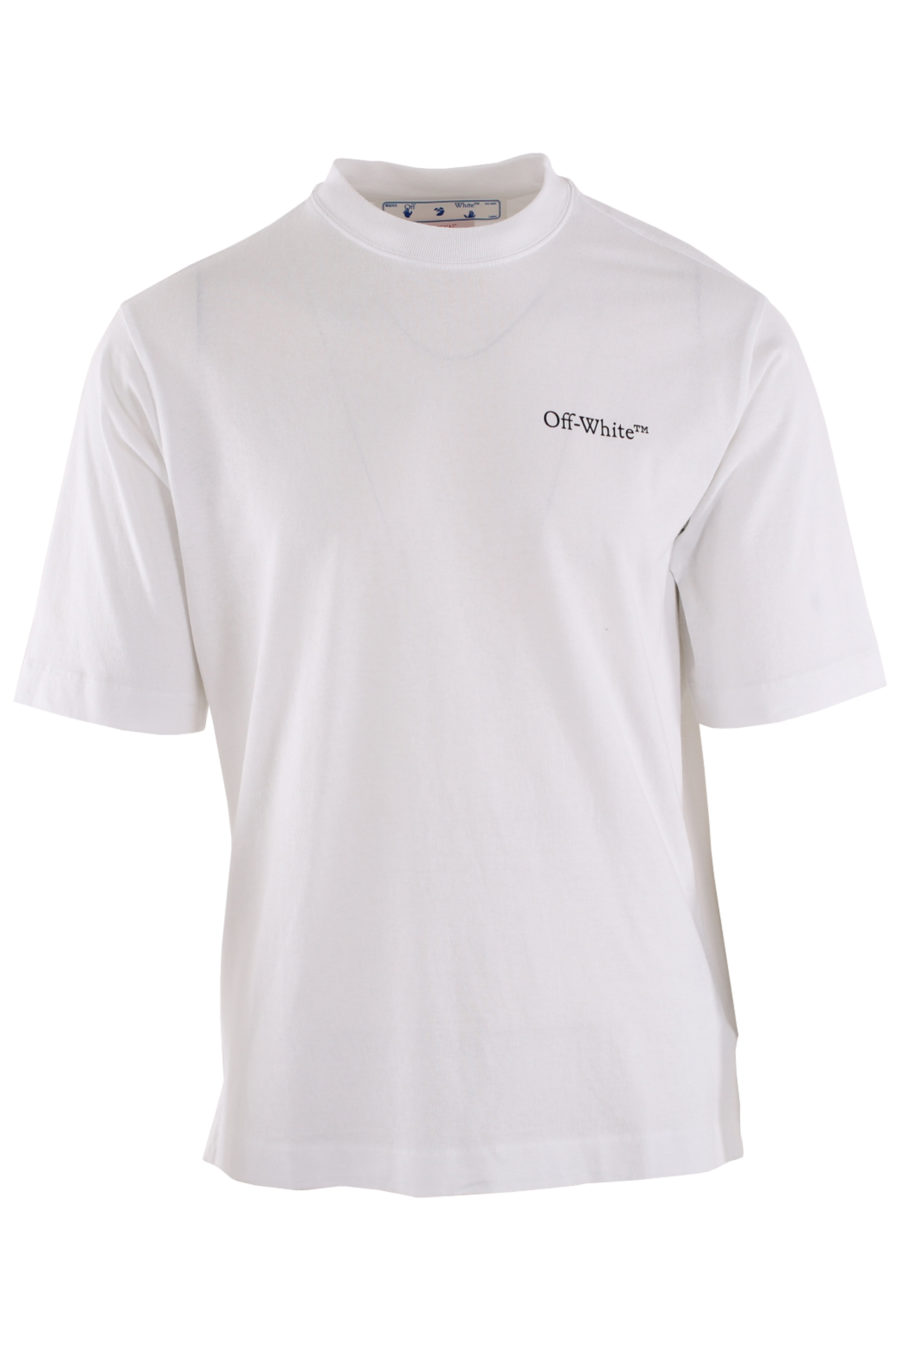 Off-White - White T-shirt 